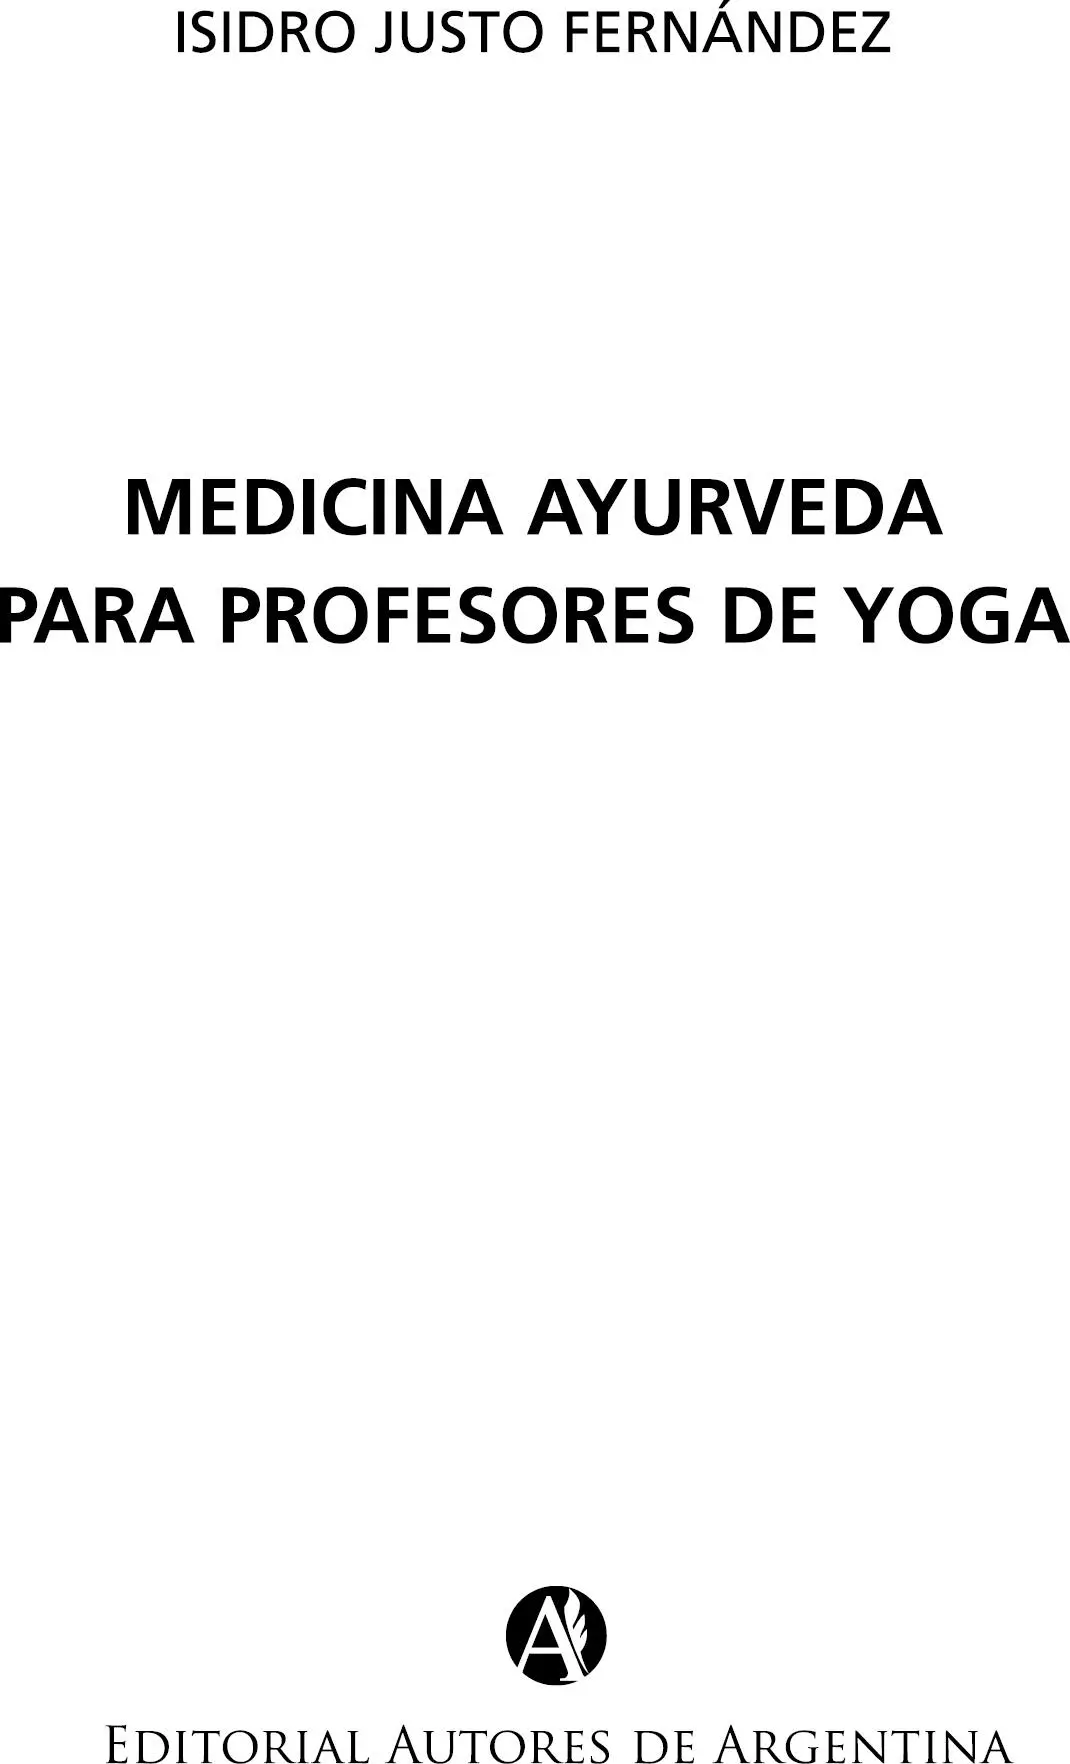 Fernández Isidro Justo Medicina ayurveda para profesores de yoga Isidro - фото 1